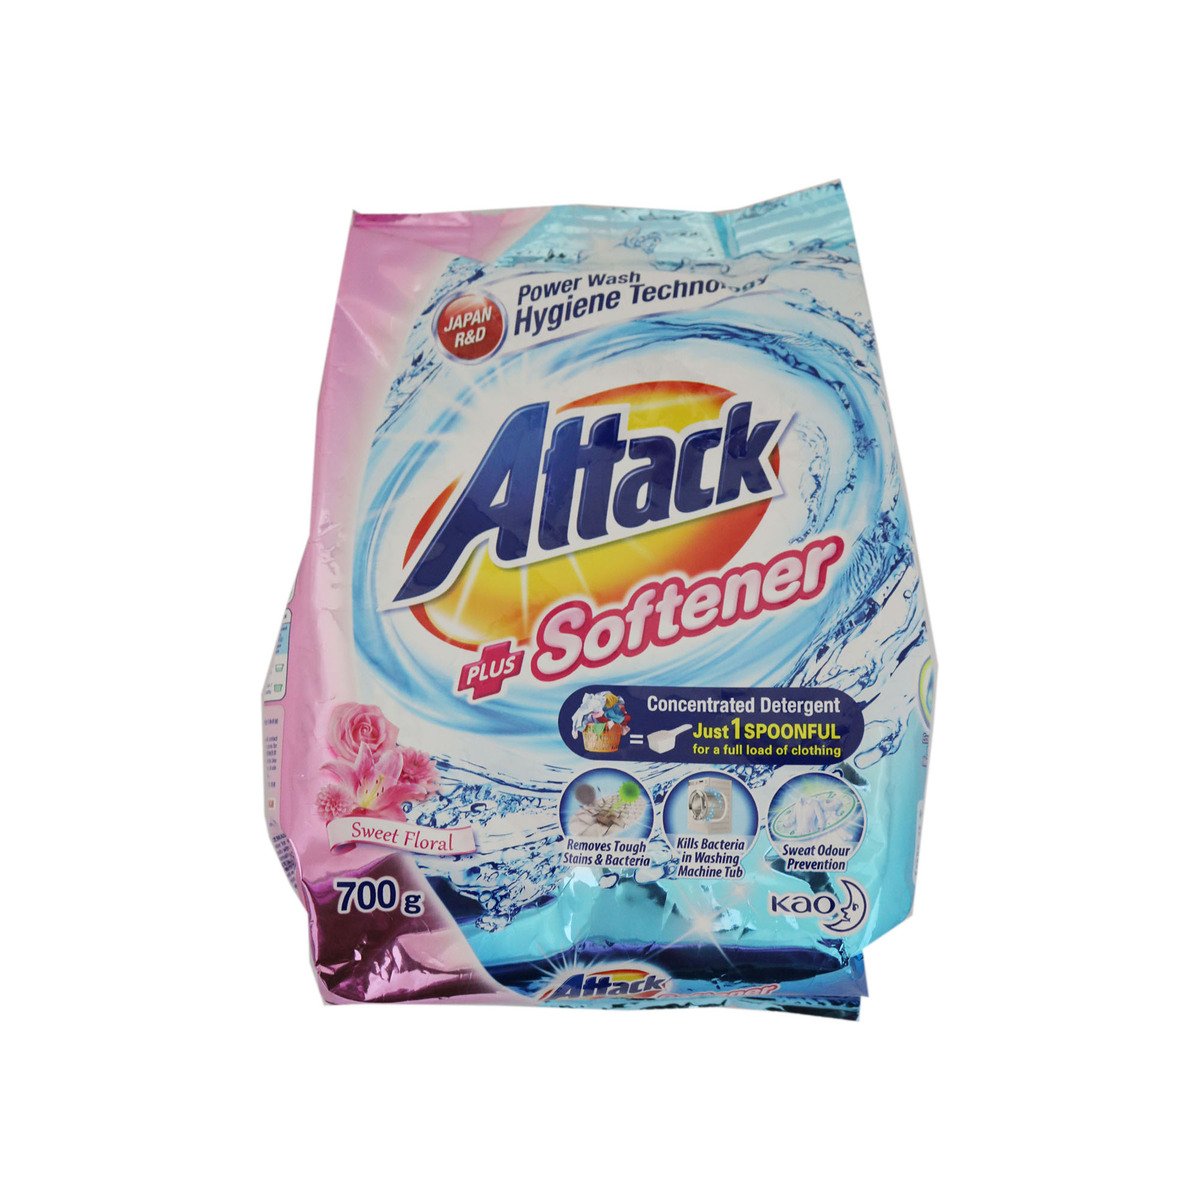 Attack Floral Detergent Plus Softener Washing Powder 700g